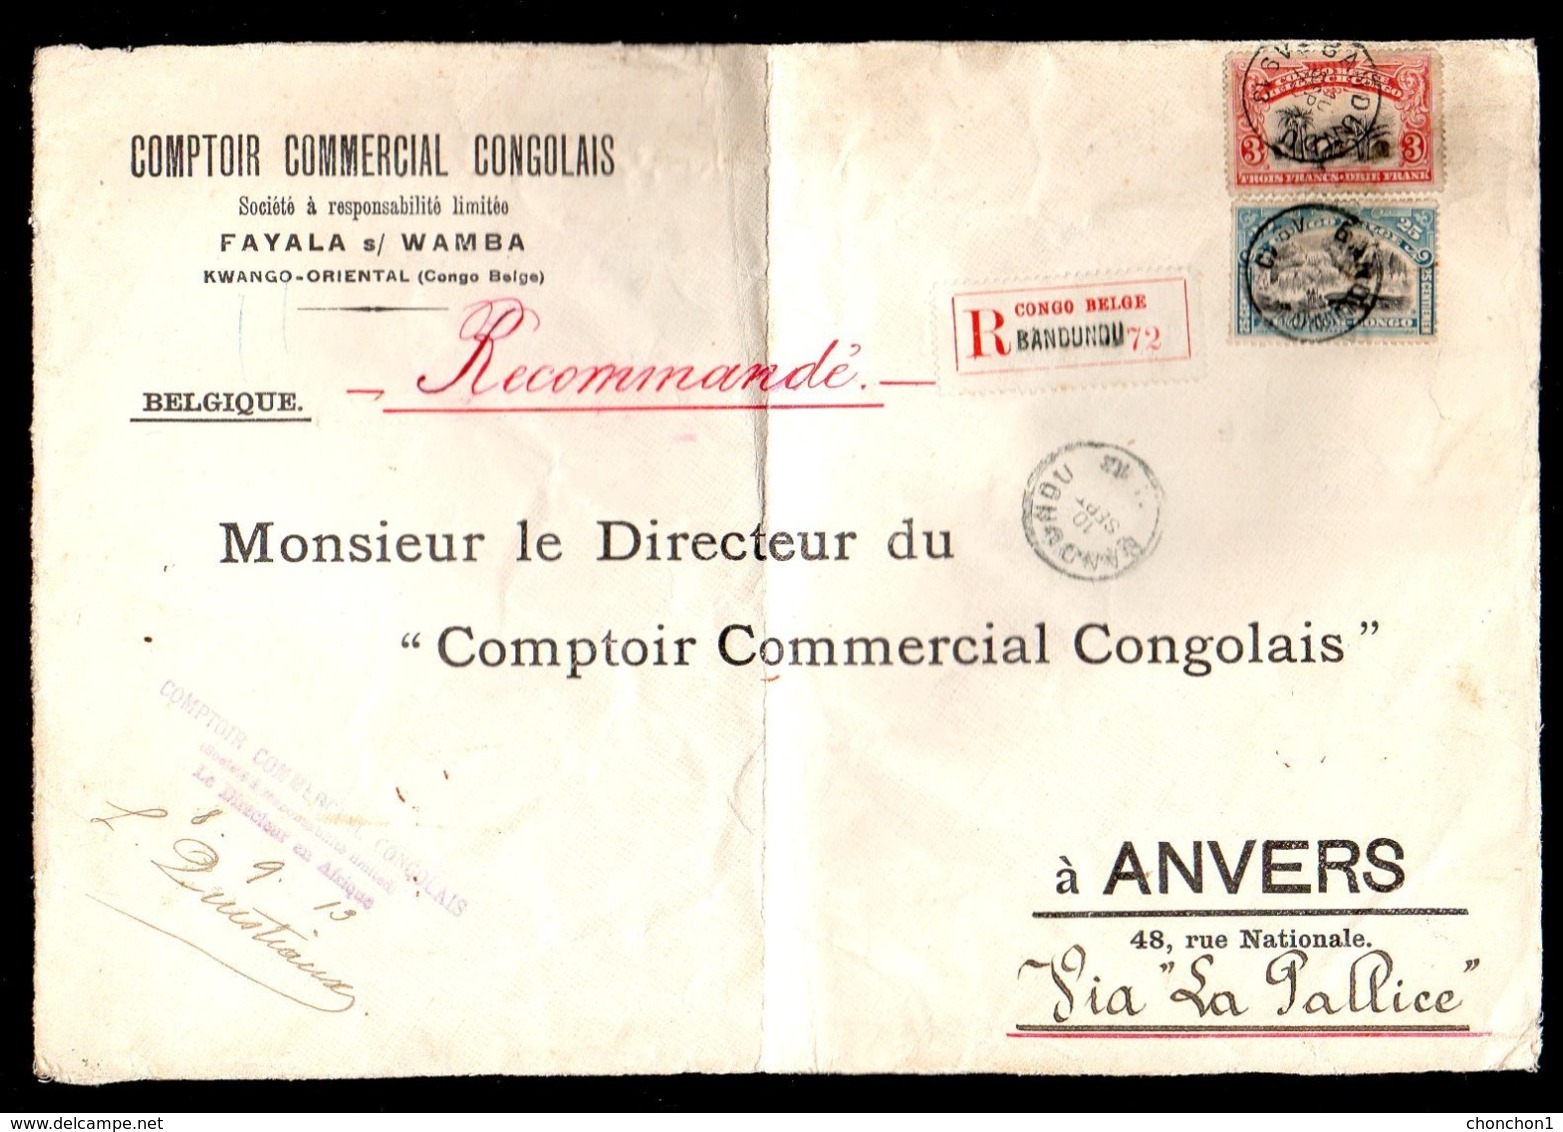 CONGO DEVANT LETTRE MOLS - BILINGUE 1910 - 6 PORTS REC - 3.50FR  - BANDUNDU 1913 - RRR 3F  - BELGIUM  - UN4 - Storia Postale